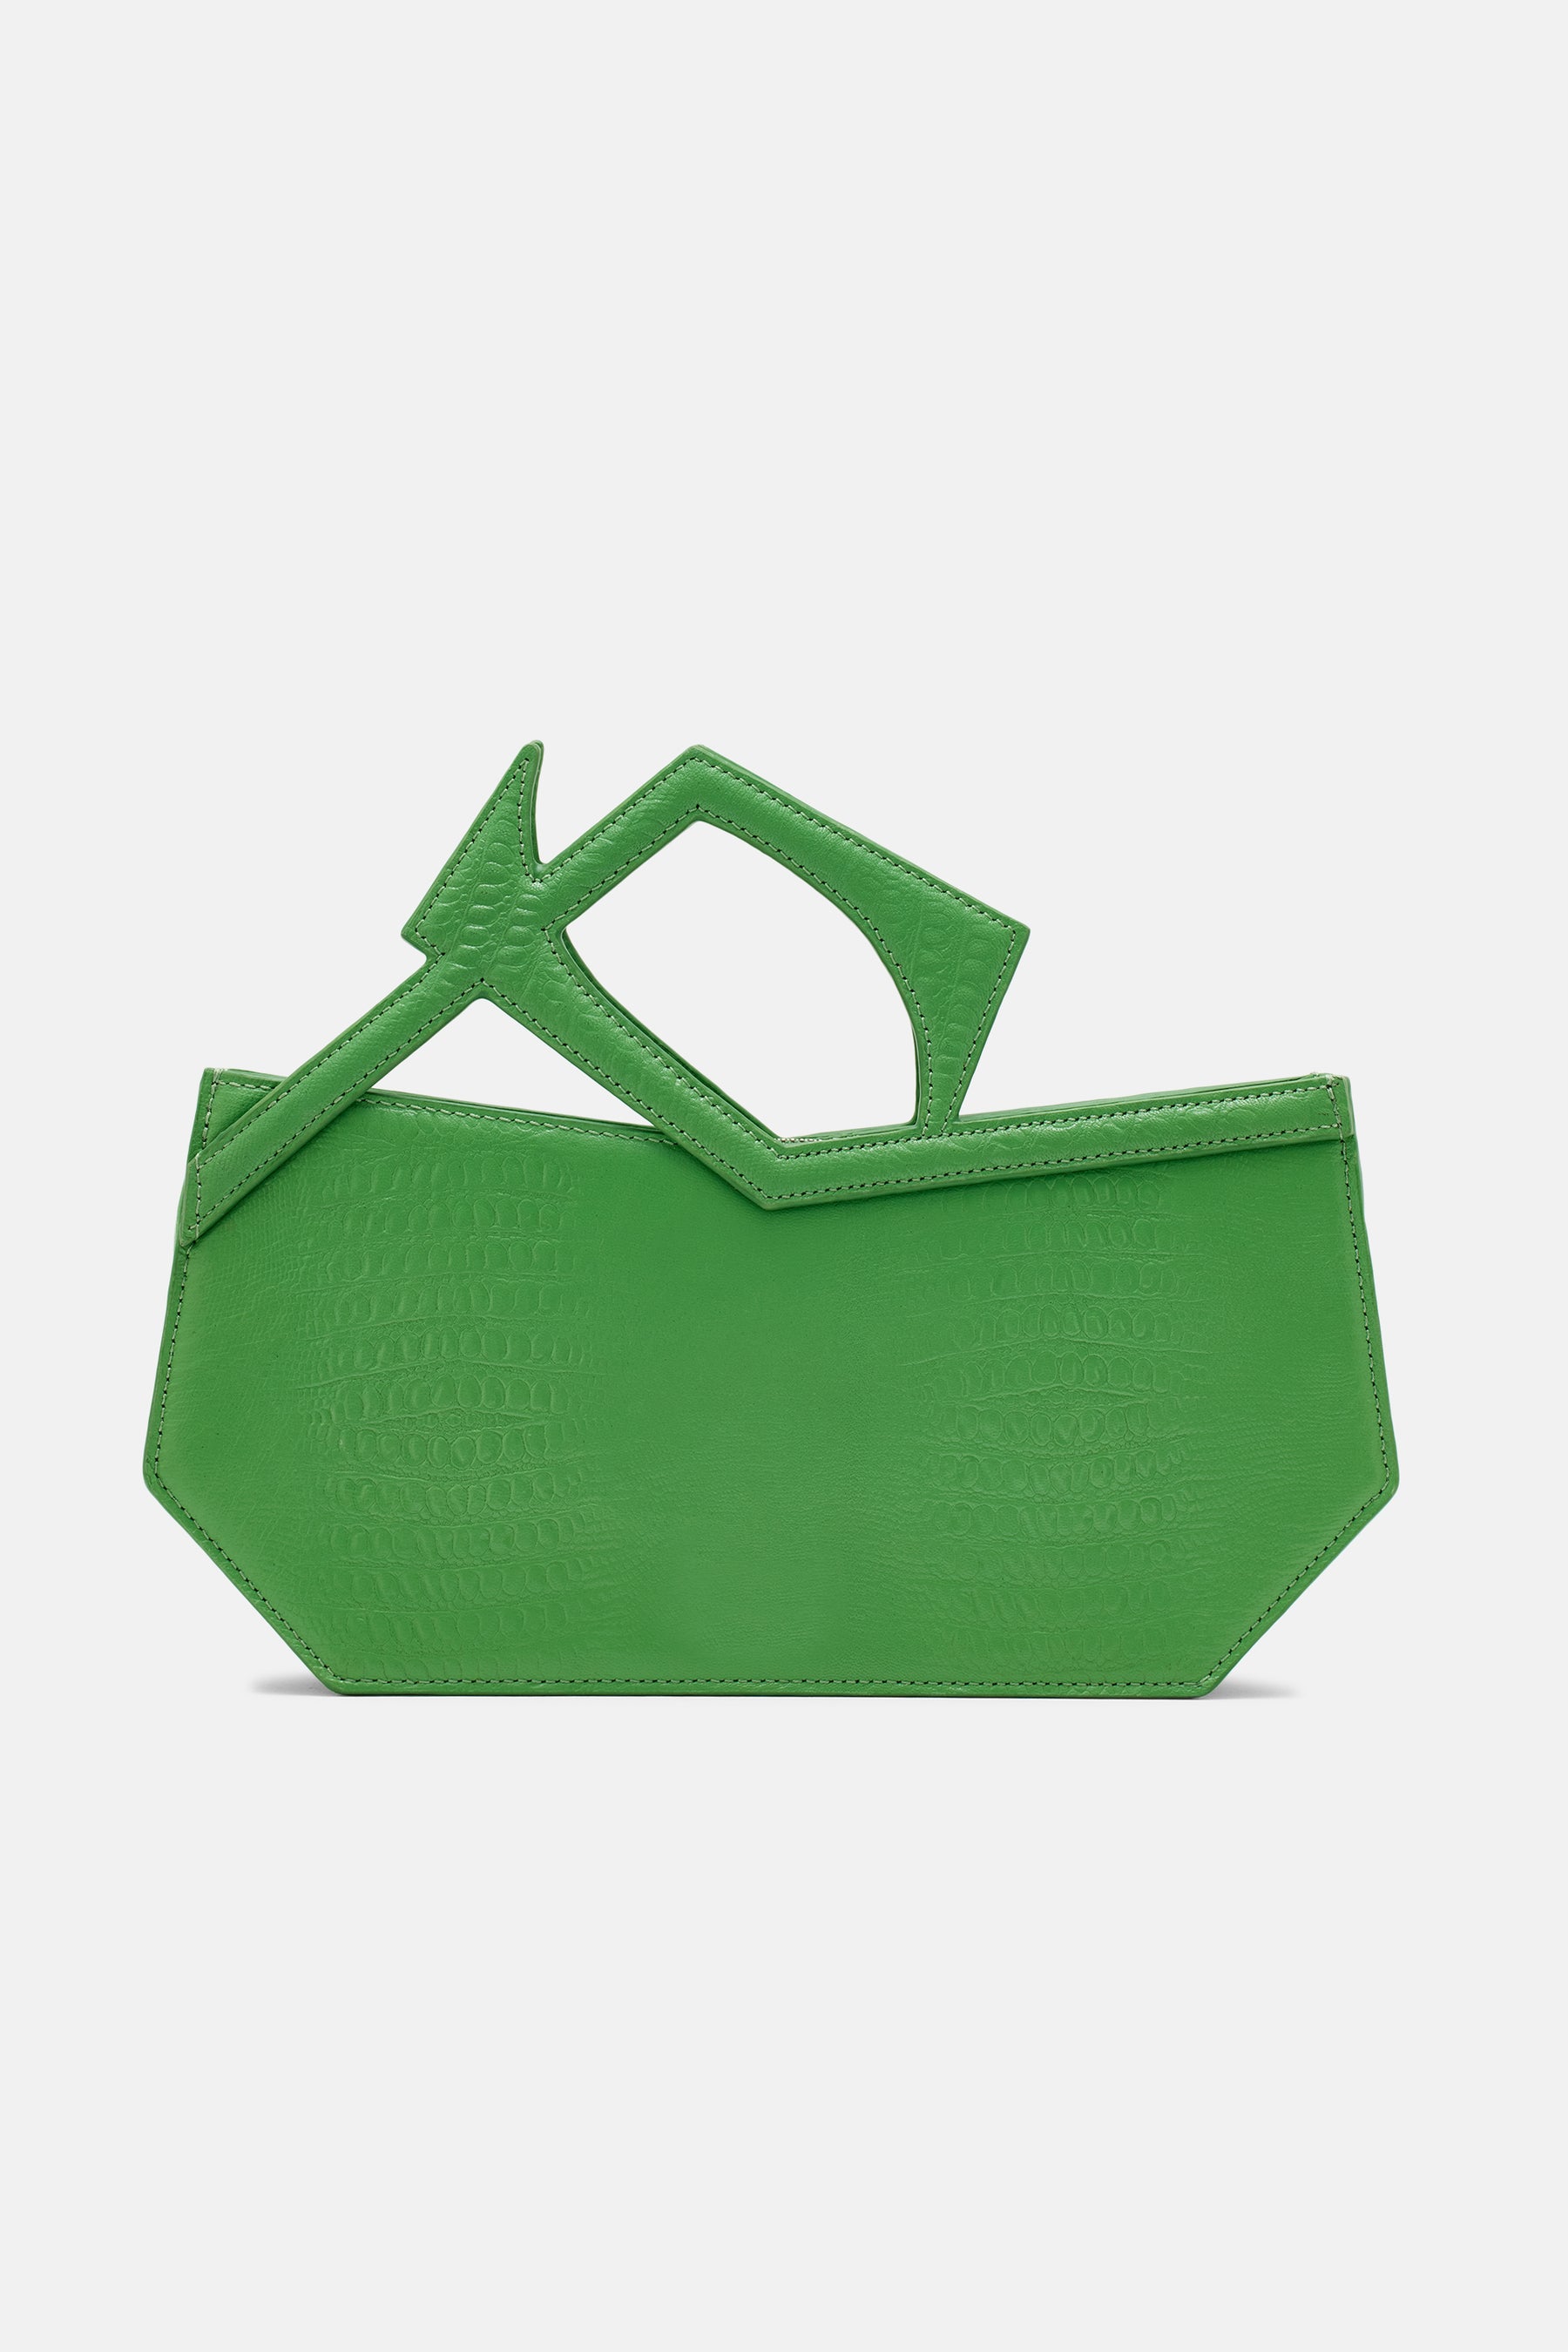 Abigail - Asymmetric Hand Bag - Lawn Green